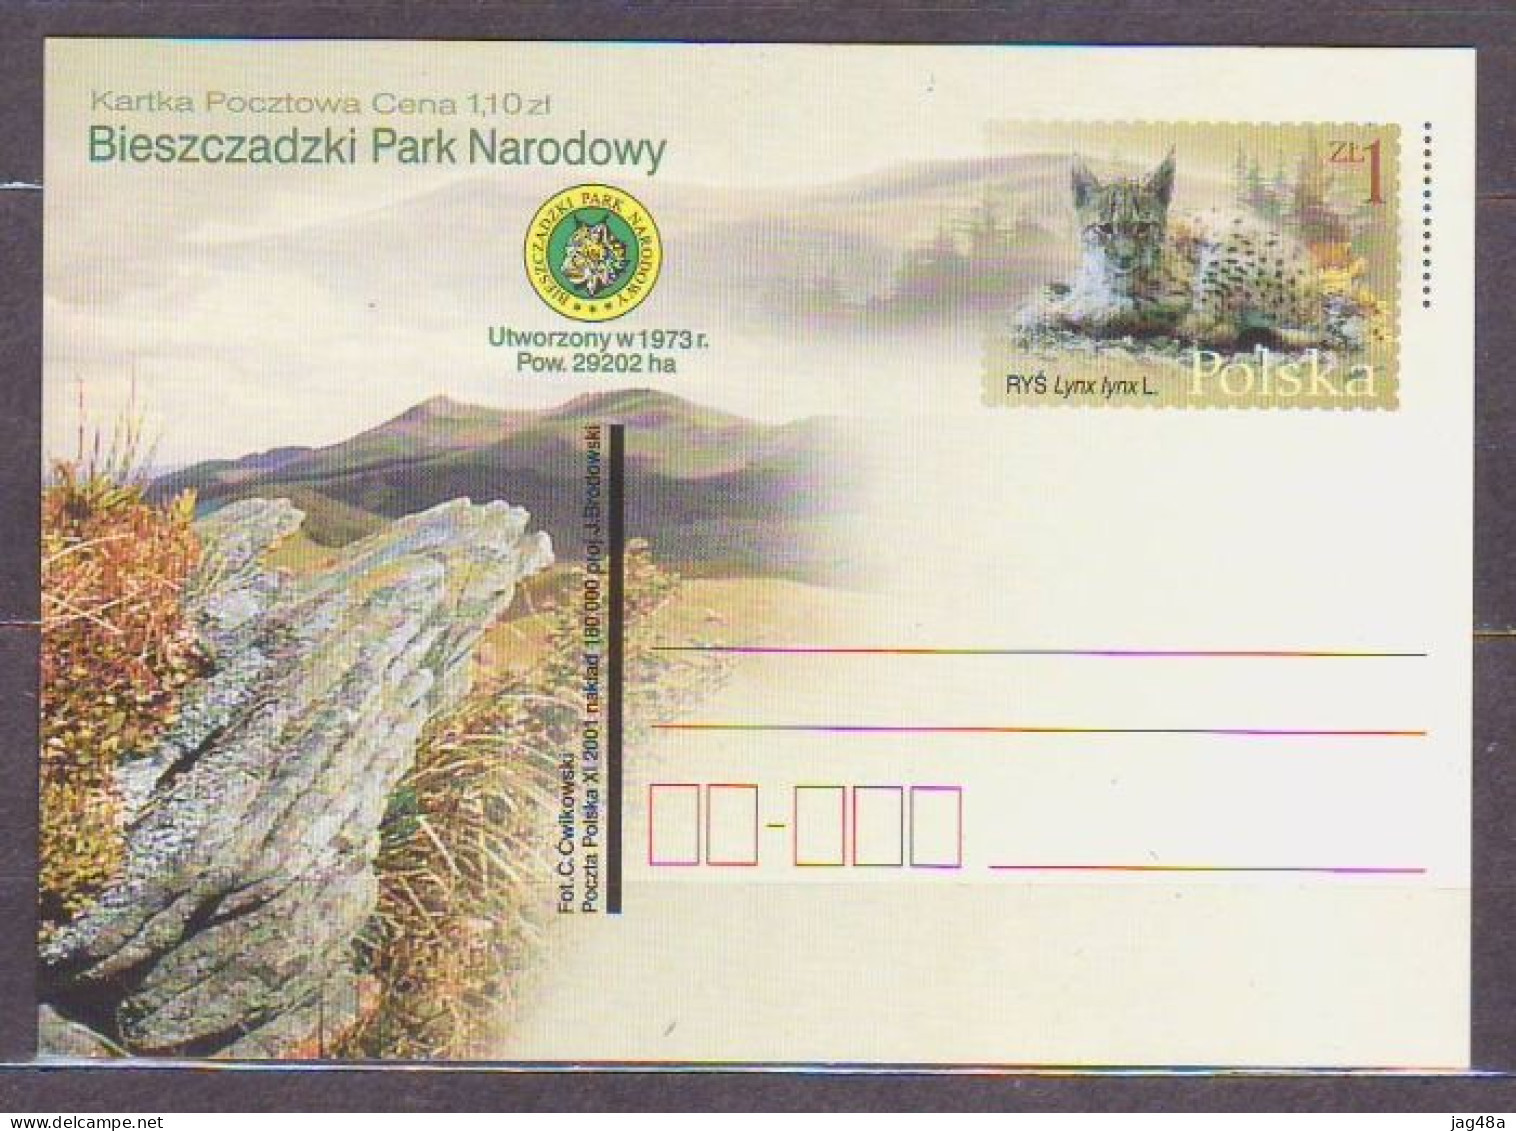 POLAND. 2001/Bieszczadzki Park Narodowy - Eurasian Lynx - PostCard/unused. - Nuovi